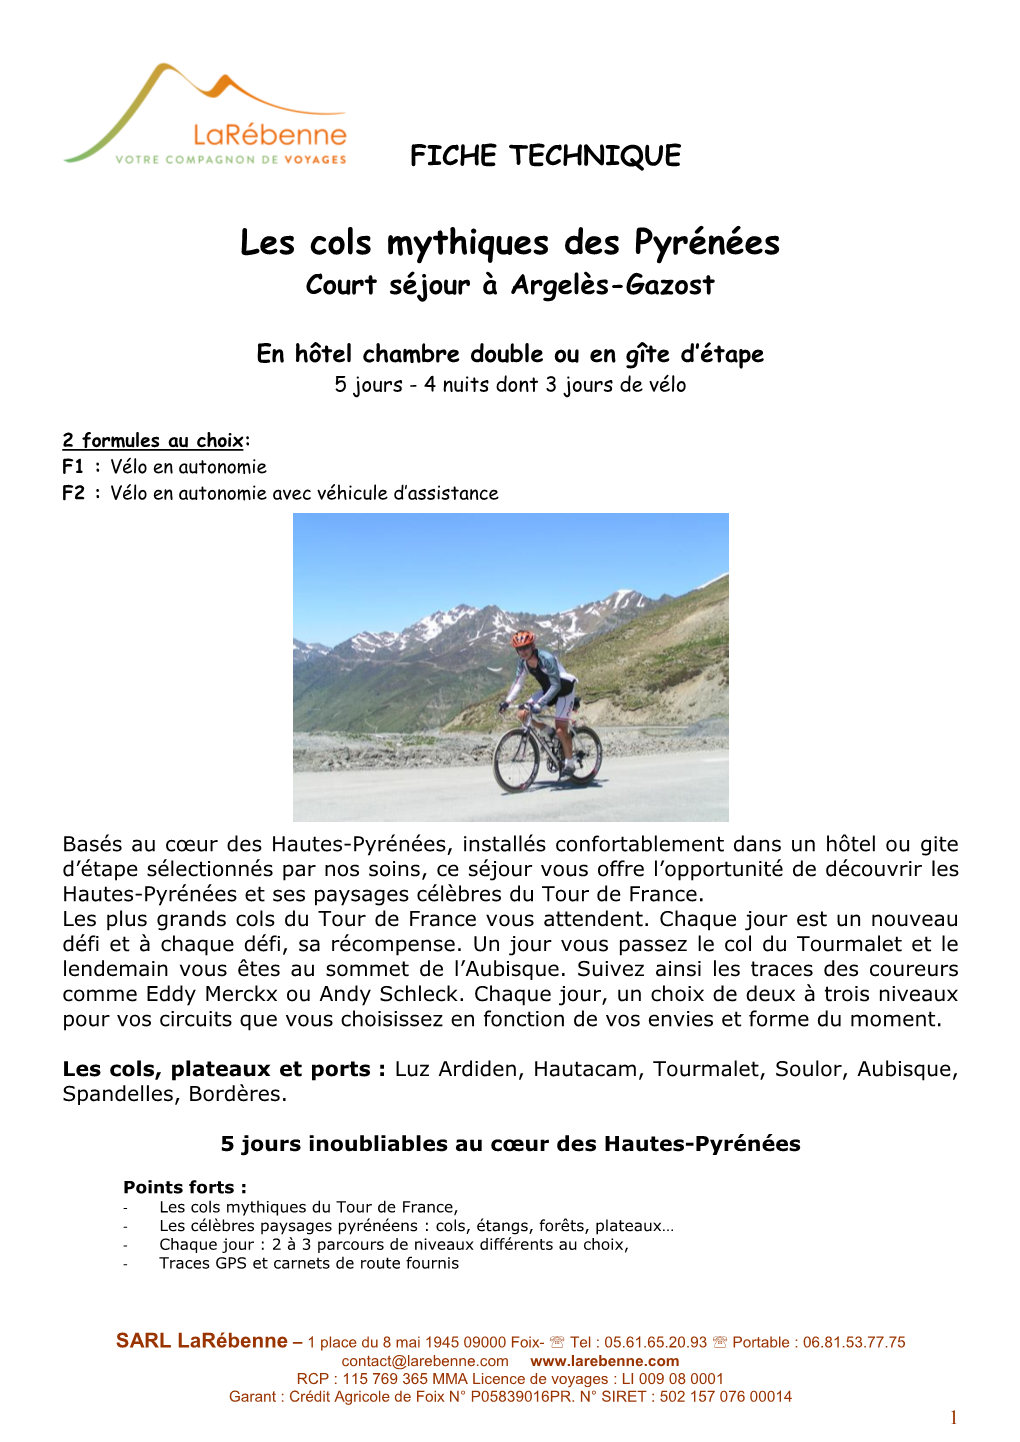 Les Cols Mythiques Des Pyrénées Argelès-Gazost